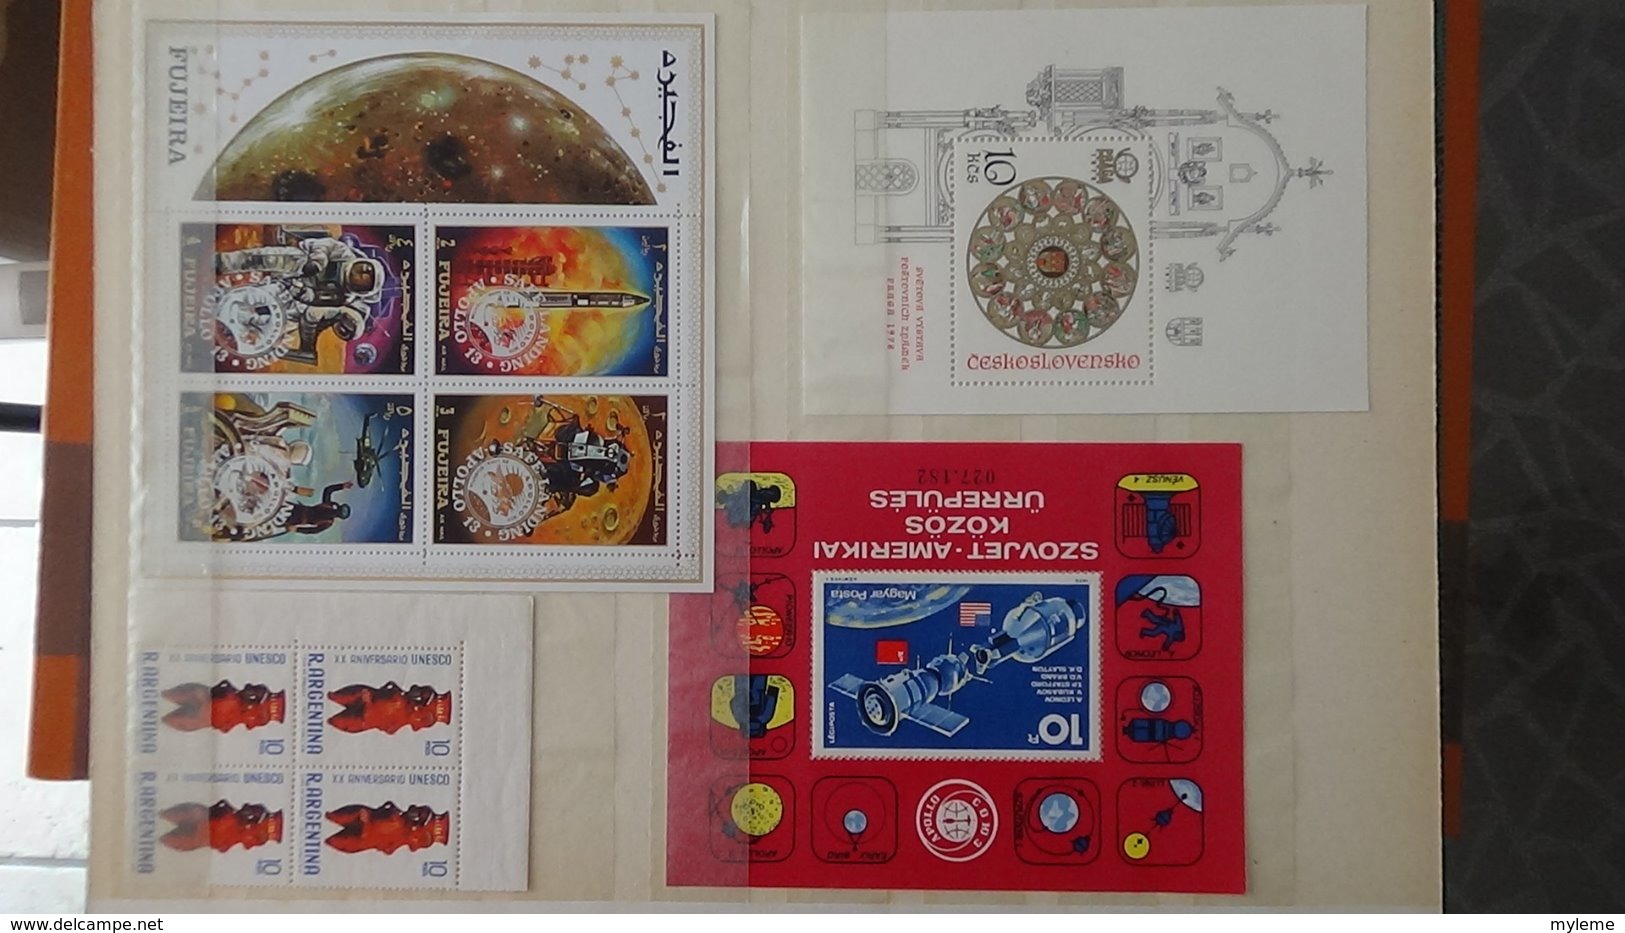 Collection de timbres, carnets et blocs ** de différents pays. A saisir !!!